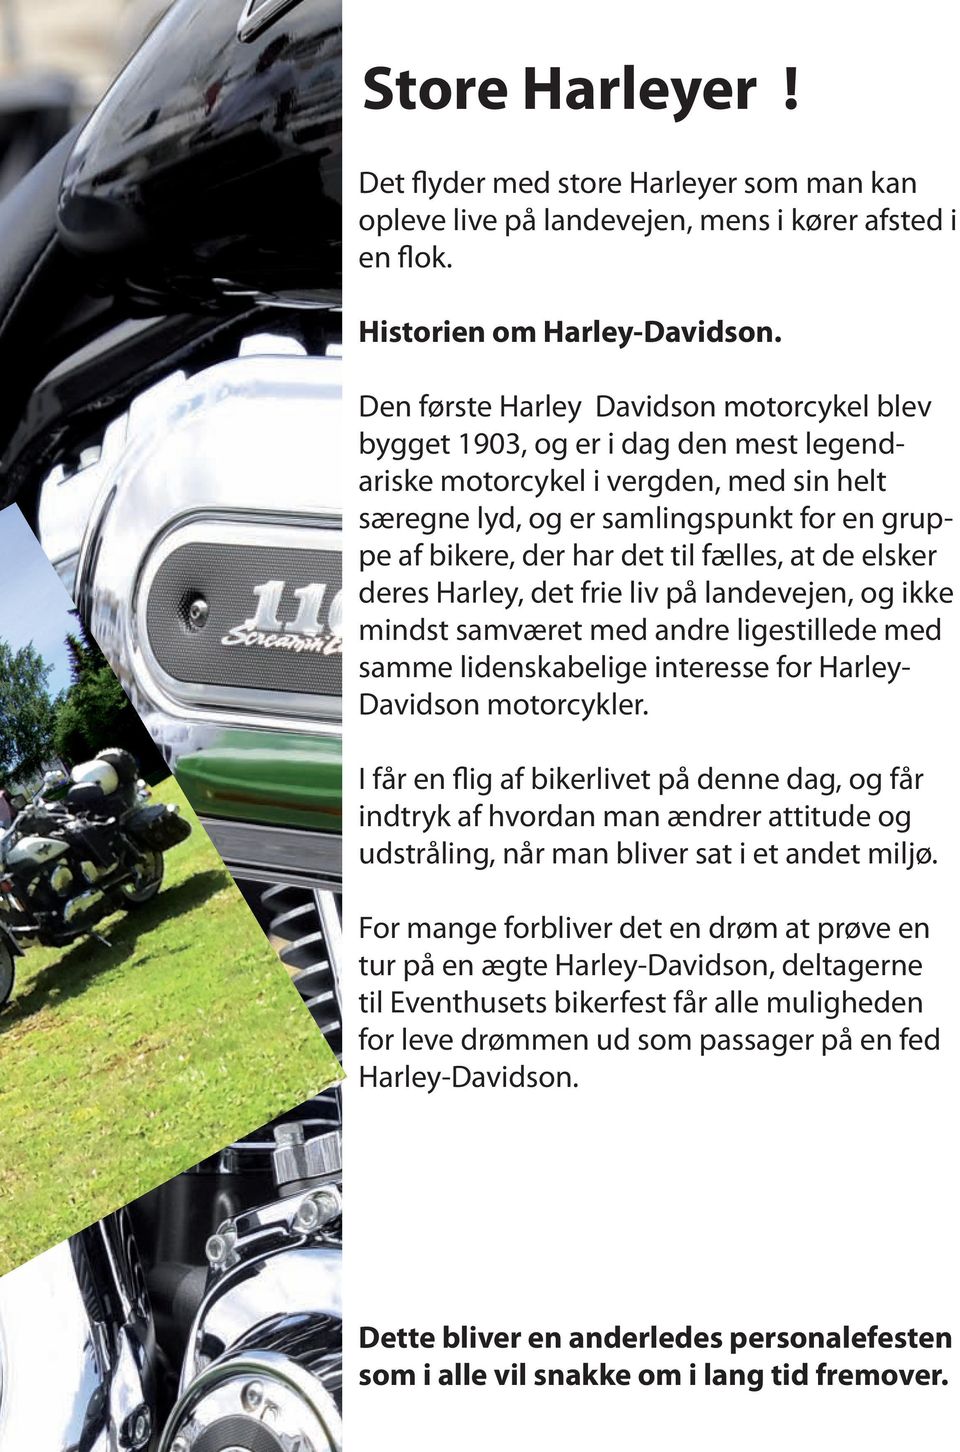 fælles, at de elsker deres Harley, det frie liv på landevejen, og ikke mindst samværet med andre ligestillede med samme lidenskabelige interesse for Harley- Davidson motorcykler.